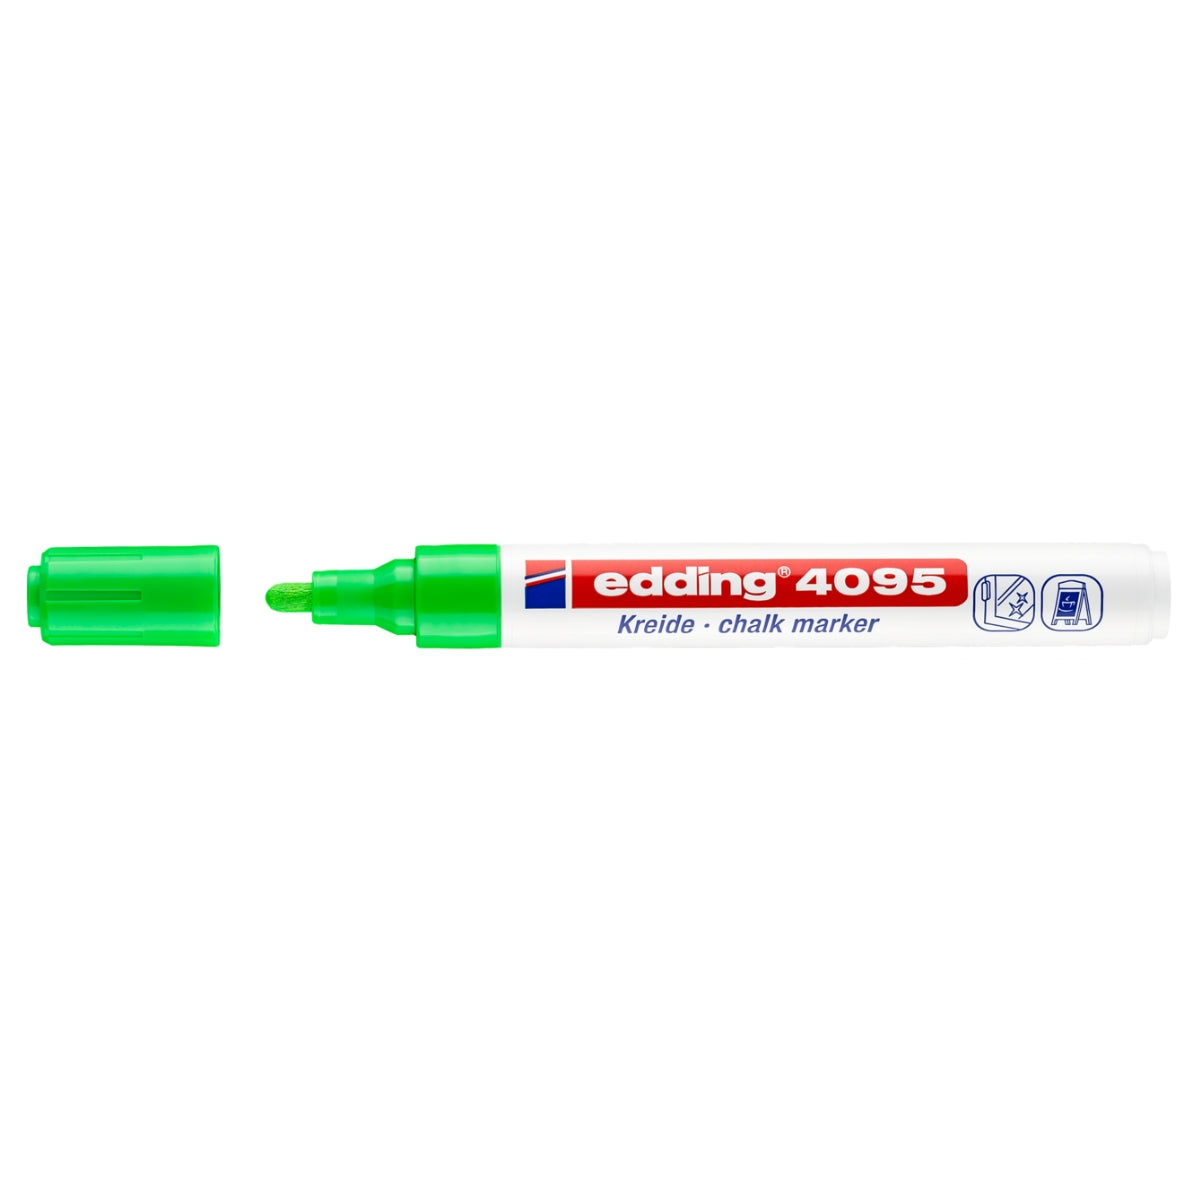 edding 4095 Chalk Marker, 2-3mm Bullet Tip, Bright Green